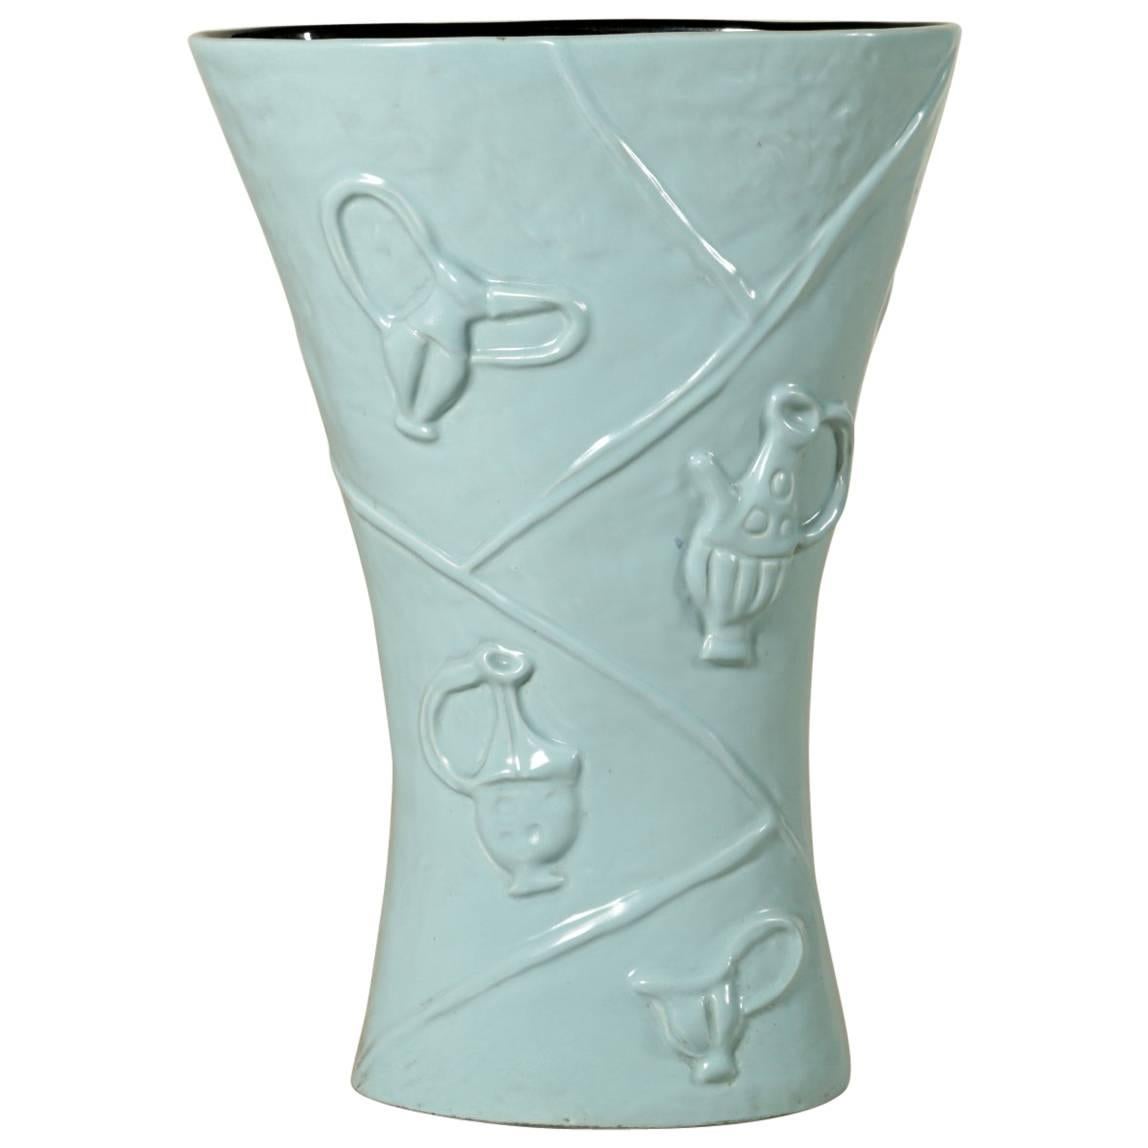 Ceramic Vase/Umbrella Stand by Campi for Società Ceramica Italiana Laveno, 1950s